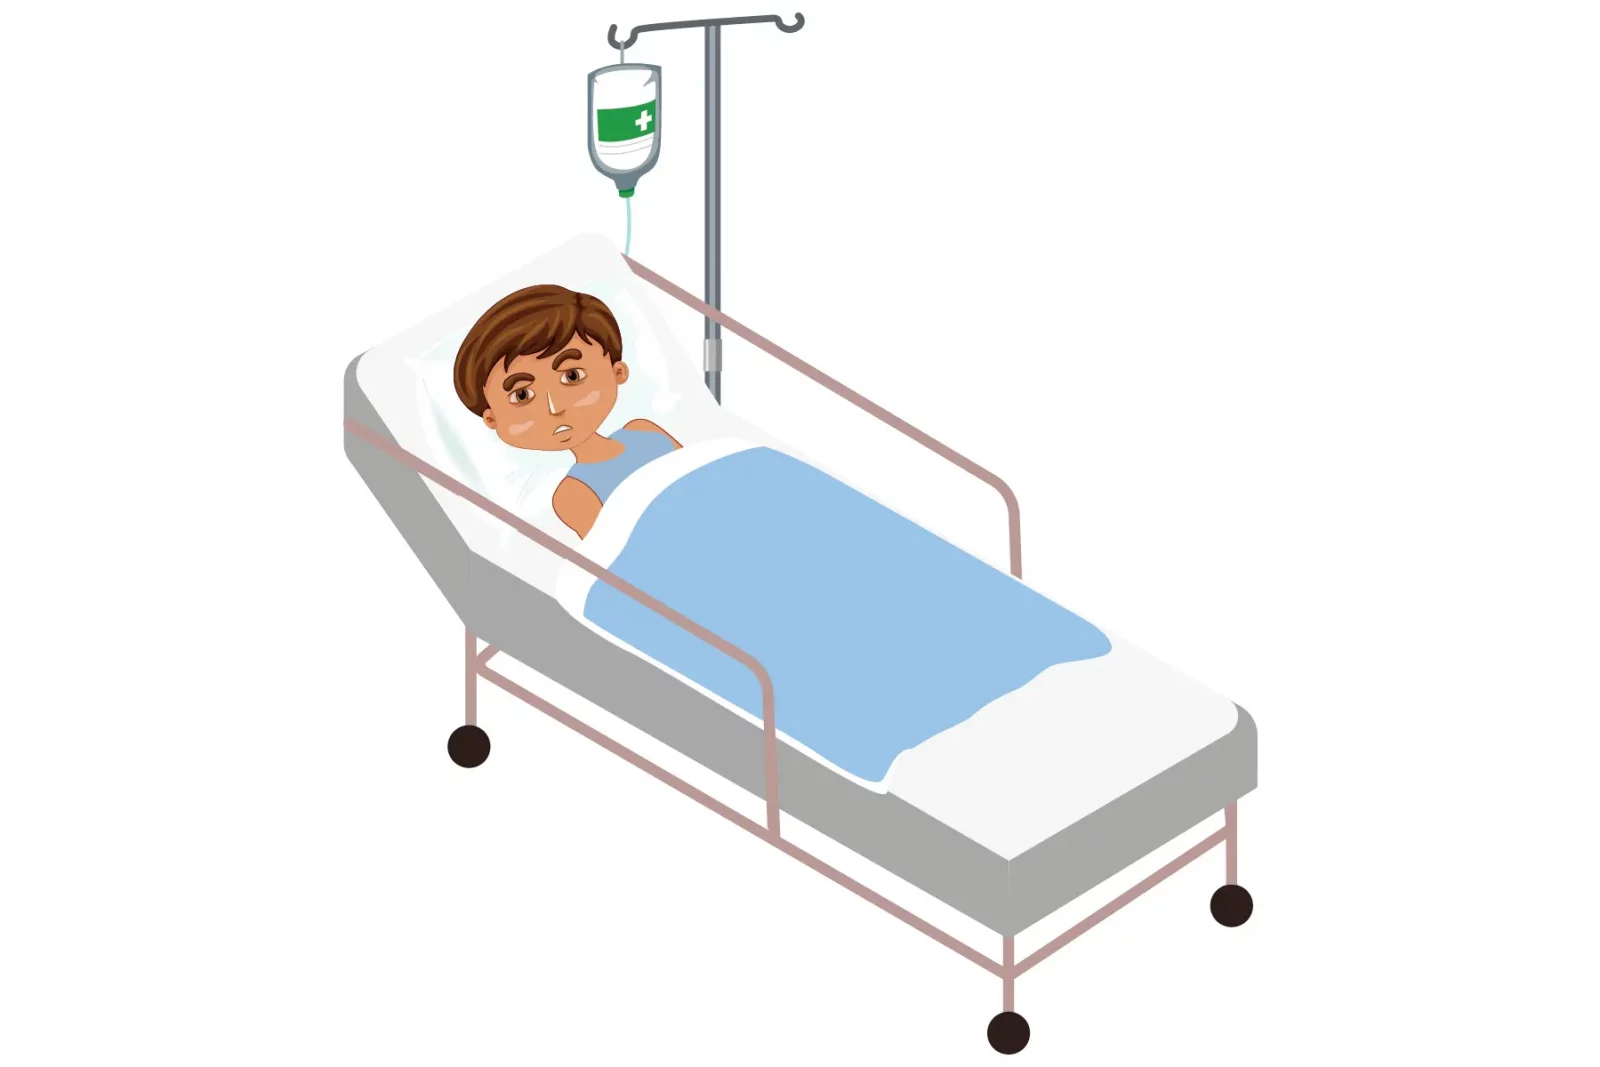 Timmy sur un lit d'hôpital